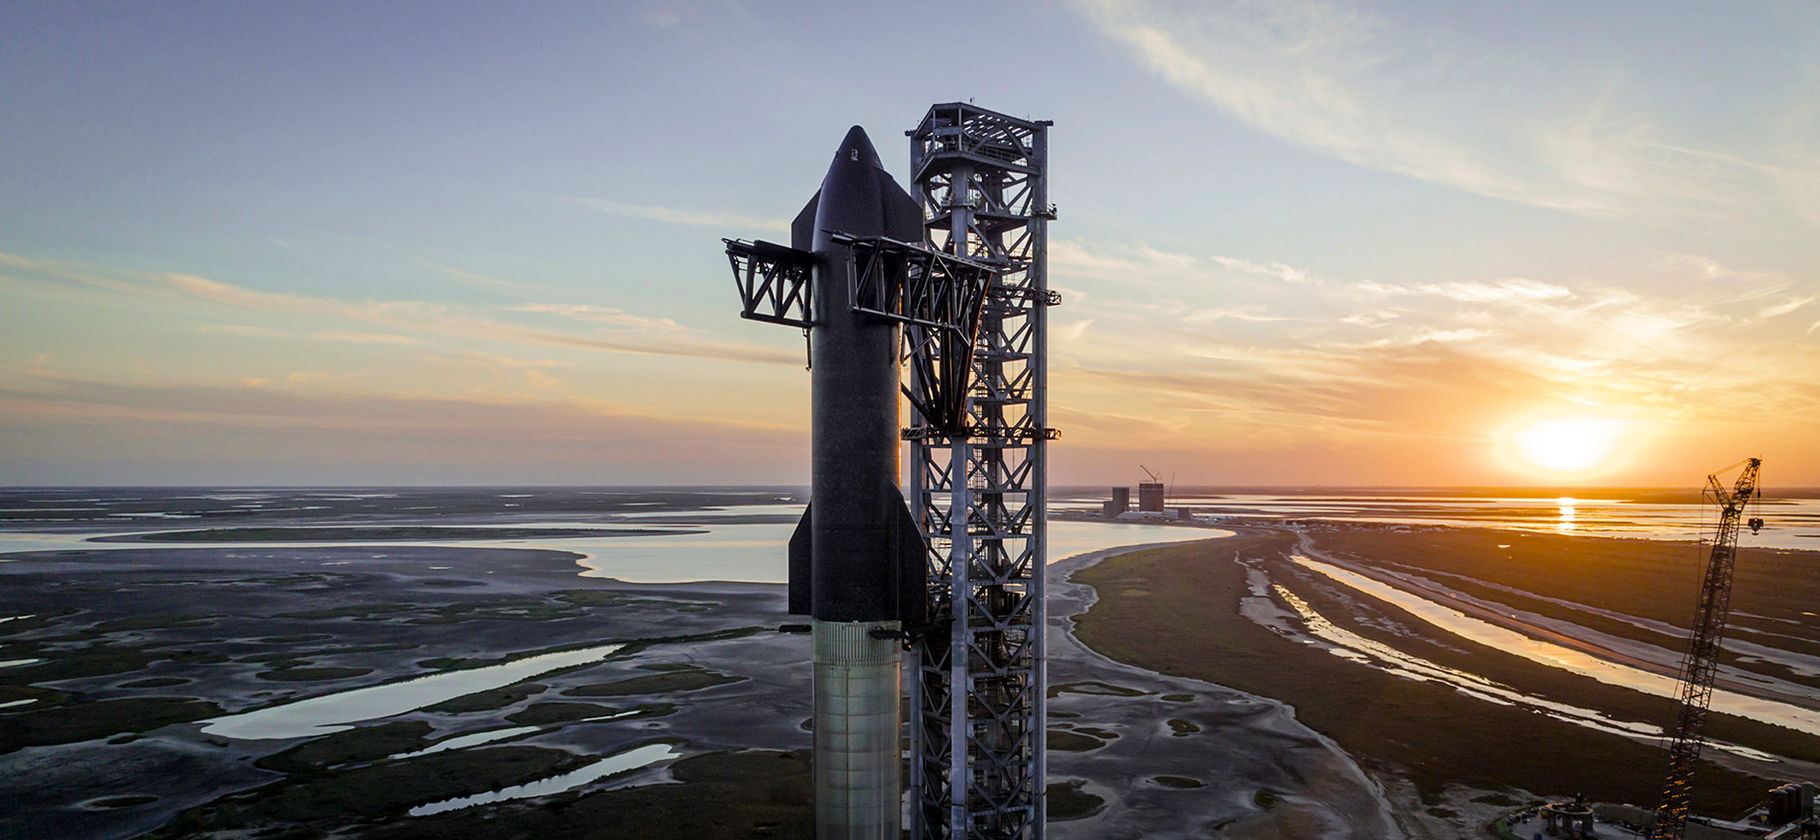 «Старшип»: что нужно знать о сверхтяжелой ракете SpaceX, которая доставит людей к Луне и Марсу